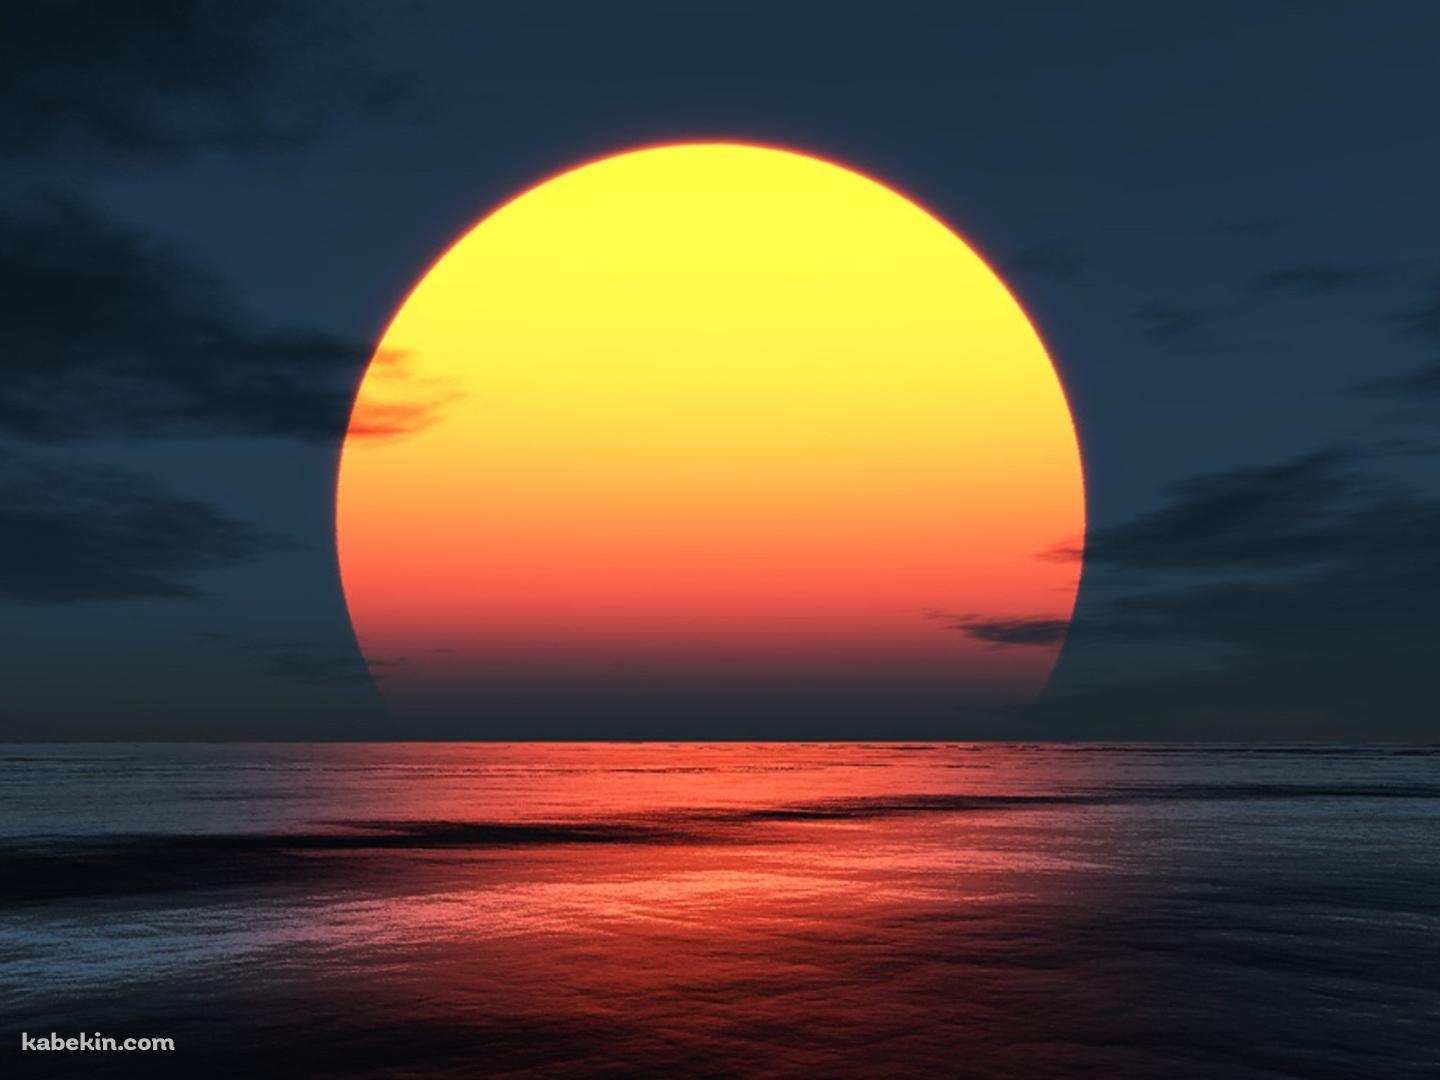 浜辺から見る夕日の壁紙(1440px x 1080px) 高画質 PC・デスクトップ用